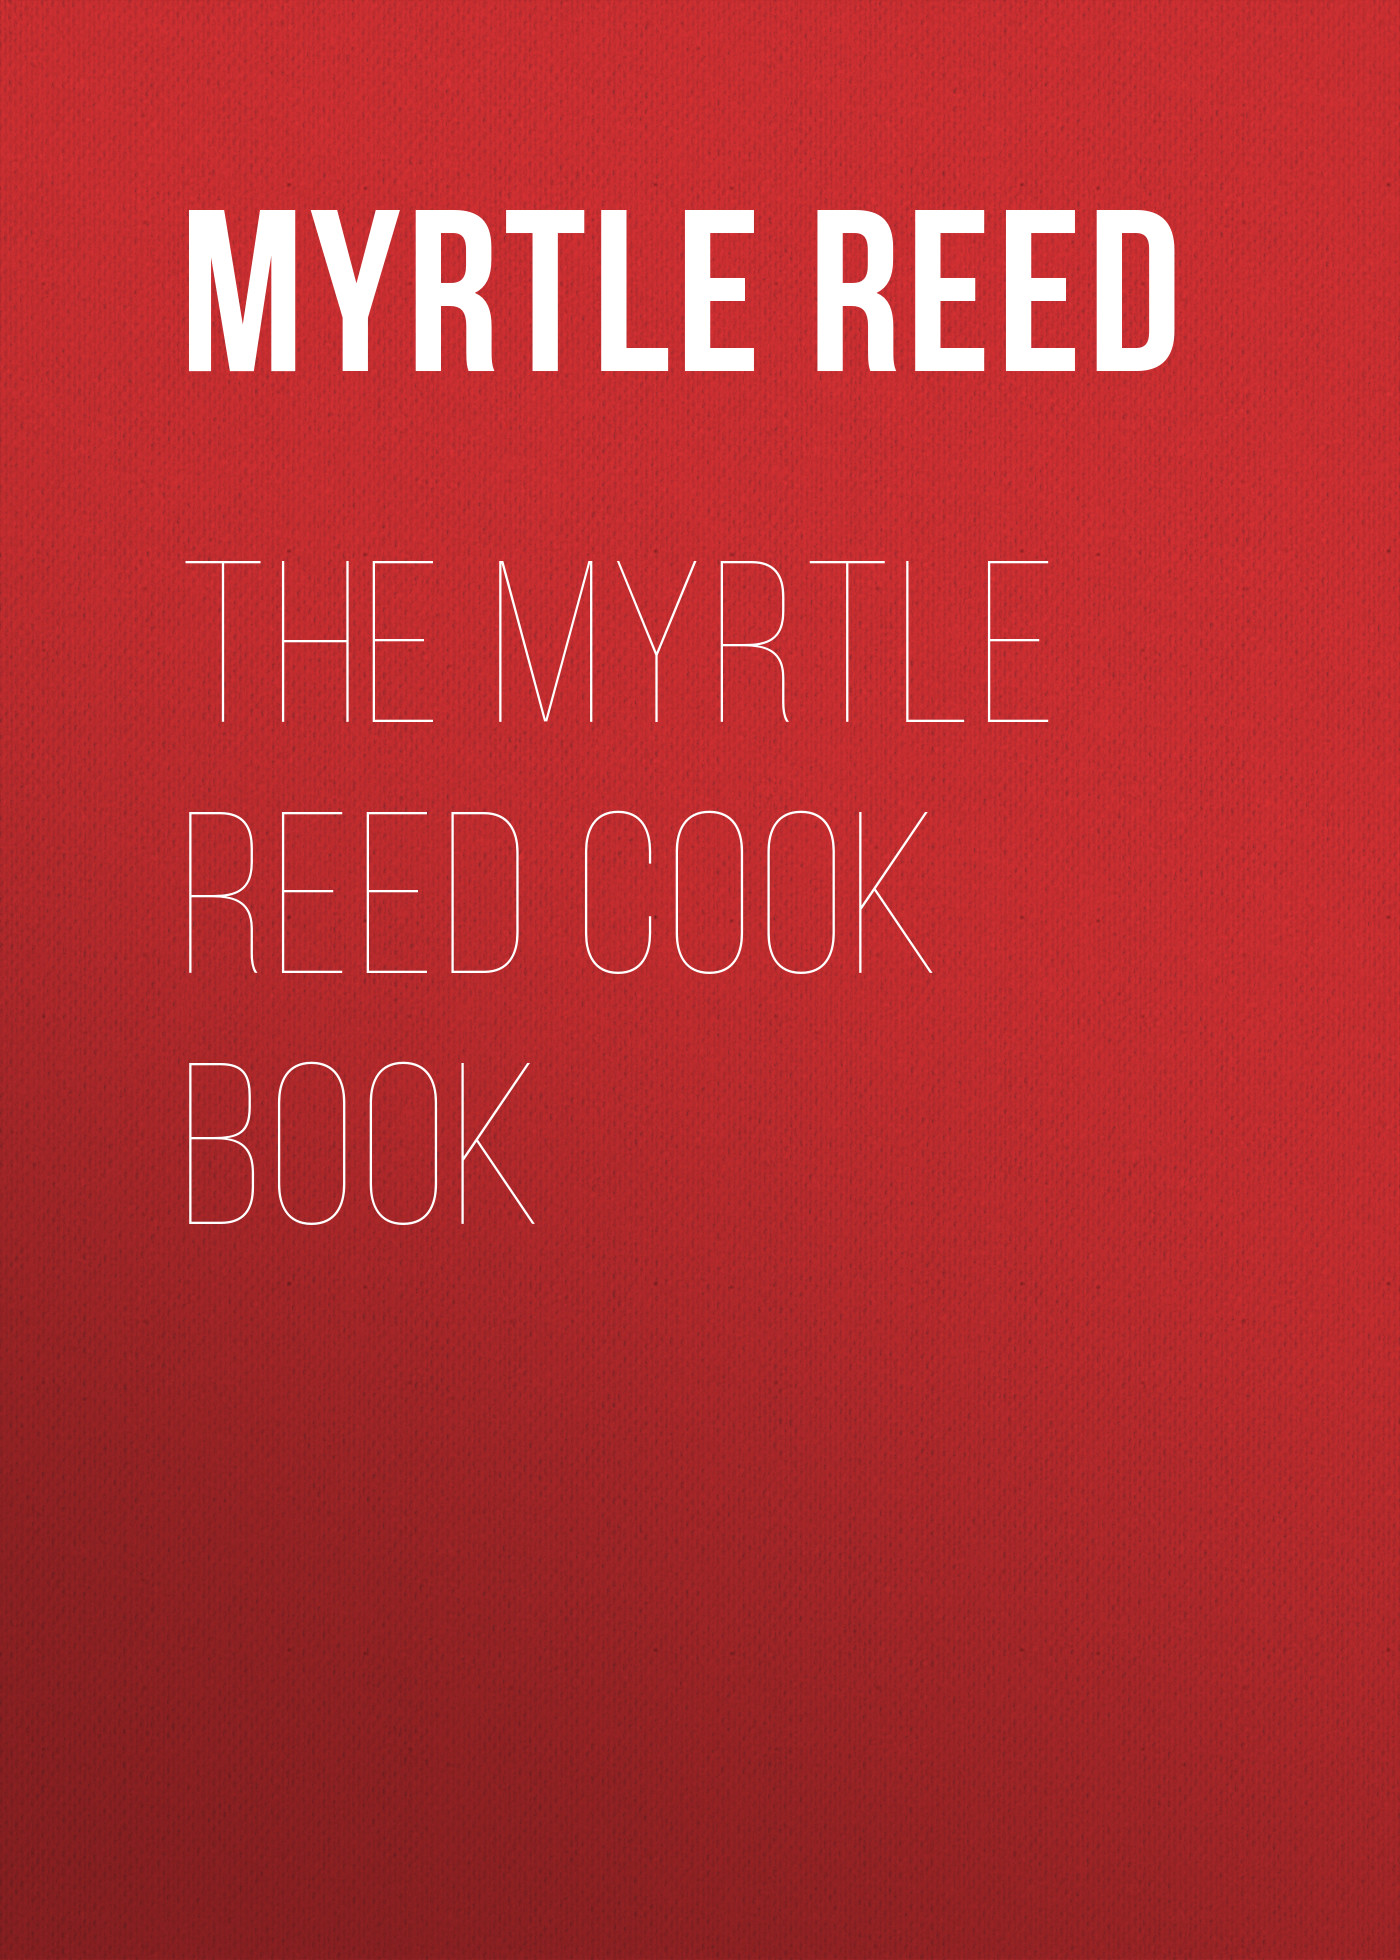 Книга The Myrtle Reed Cook Book из серии , созданная Myrtle Reed, может относится к жанру Зарубежная классика. Стоимость электронной книги The Myrtle Reed Cook Book с идентификатором 23169627 составляет 0 руб.